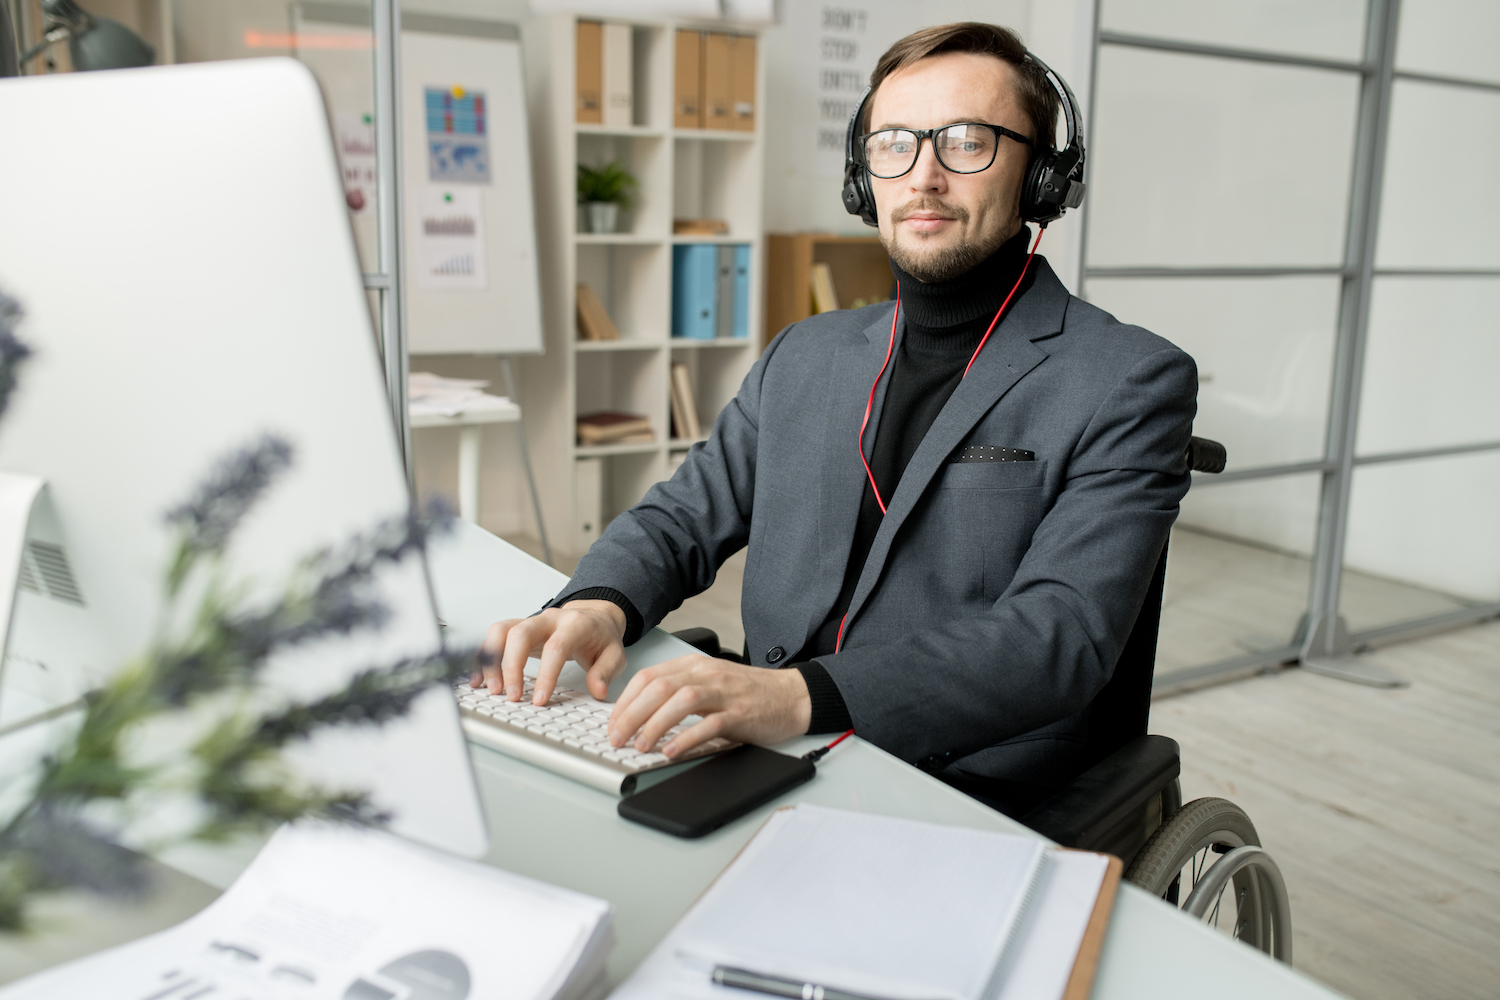 En välklädd korthårig man i mörk kostym och glasögon sitter vid skrivbord och arbetar på dator. Han är uppkopplad till telefonen med headset och ser produktiv ut. I bakgrunden syns whiteboardtavla och bokhyllor.